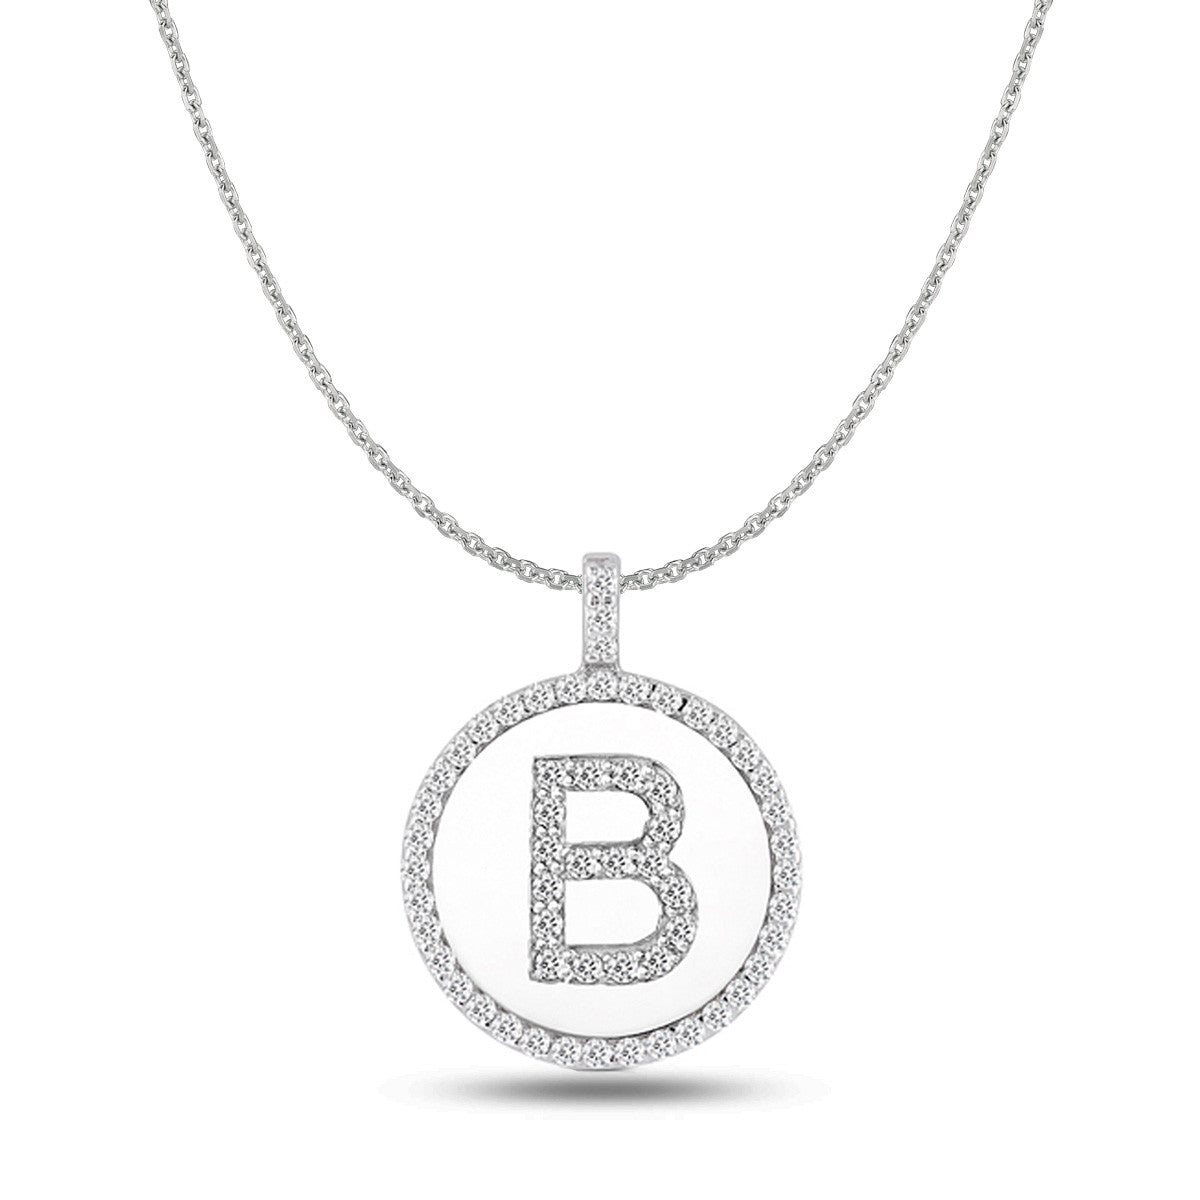 Pendentif disque en or blanc 14 carats avec initiale en diamant « B » (0,60 ct), bijoux de créateur raffinés pour hommes et femmes